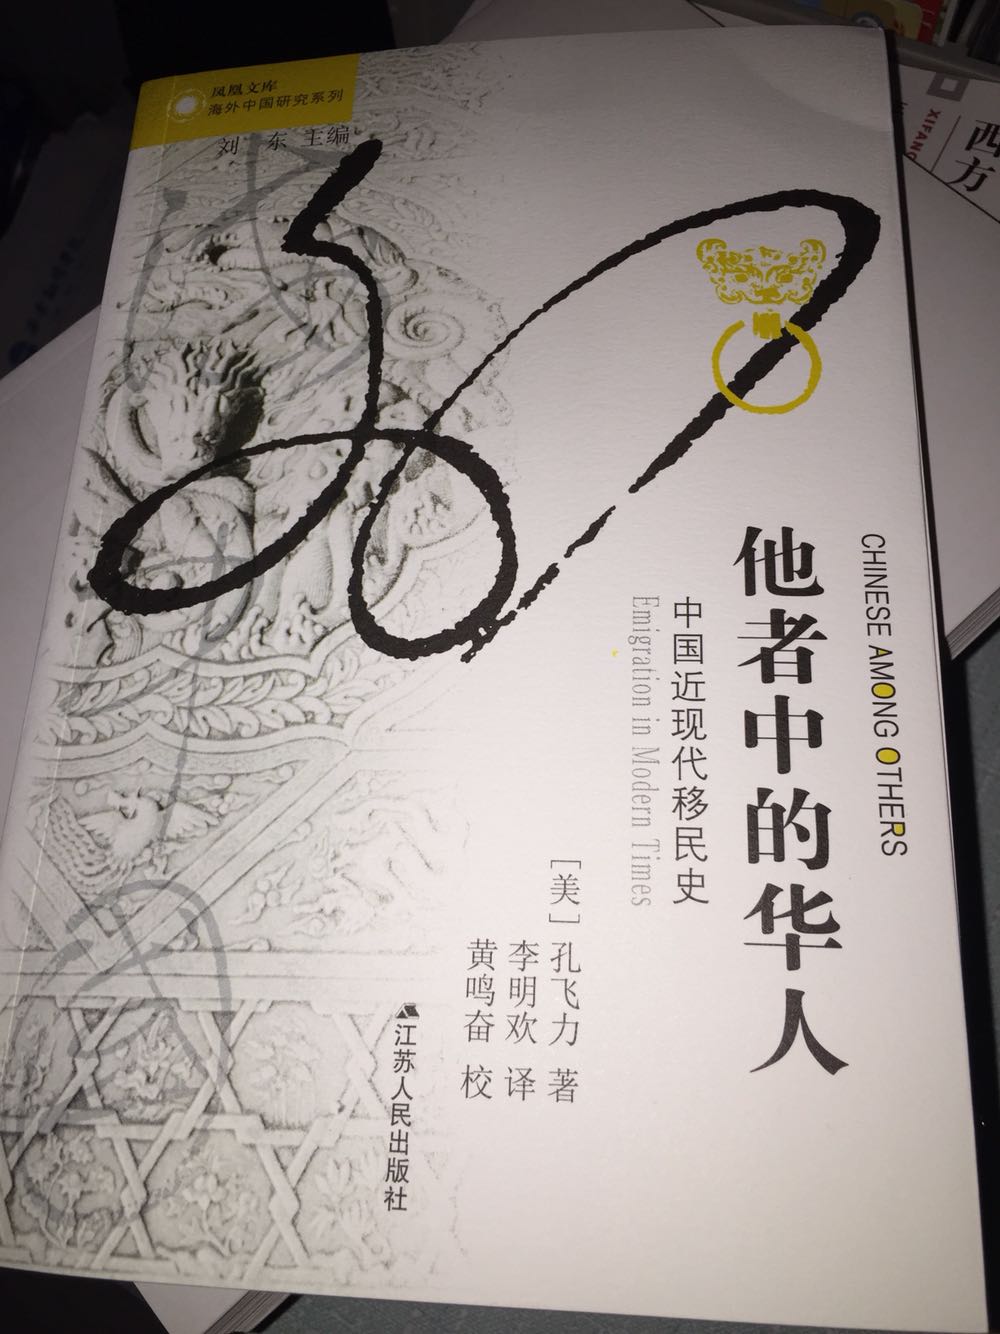 很有意思的一本书，关于华人移民的，推荐给大家读一读。包装很新，用的是专用箱子，书没有任何破损